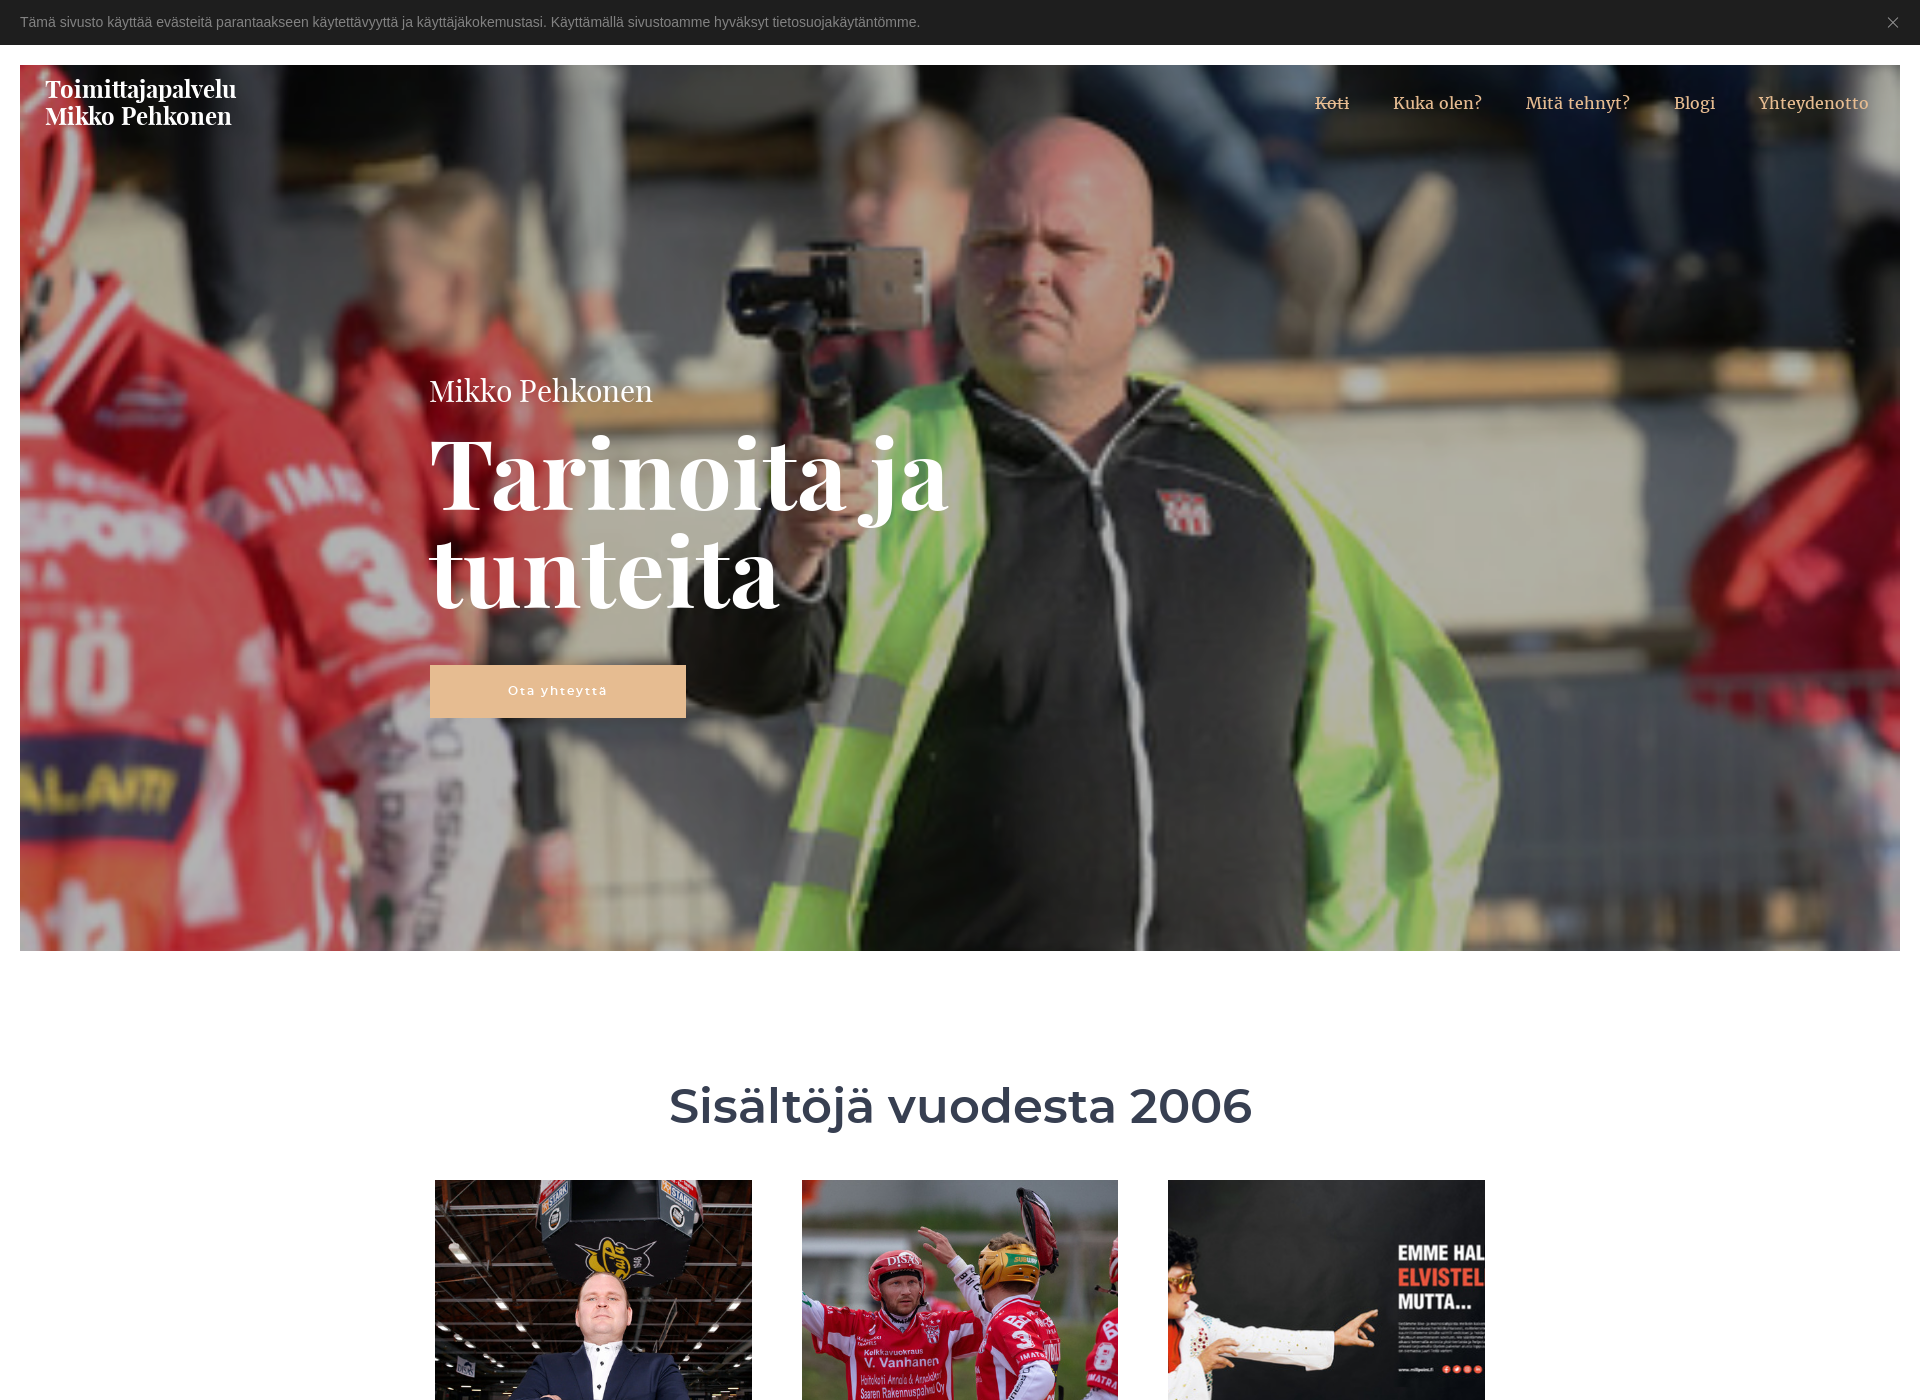 Näyttökuva mikkopehkonen.fi